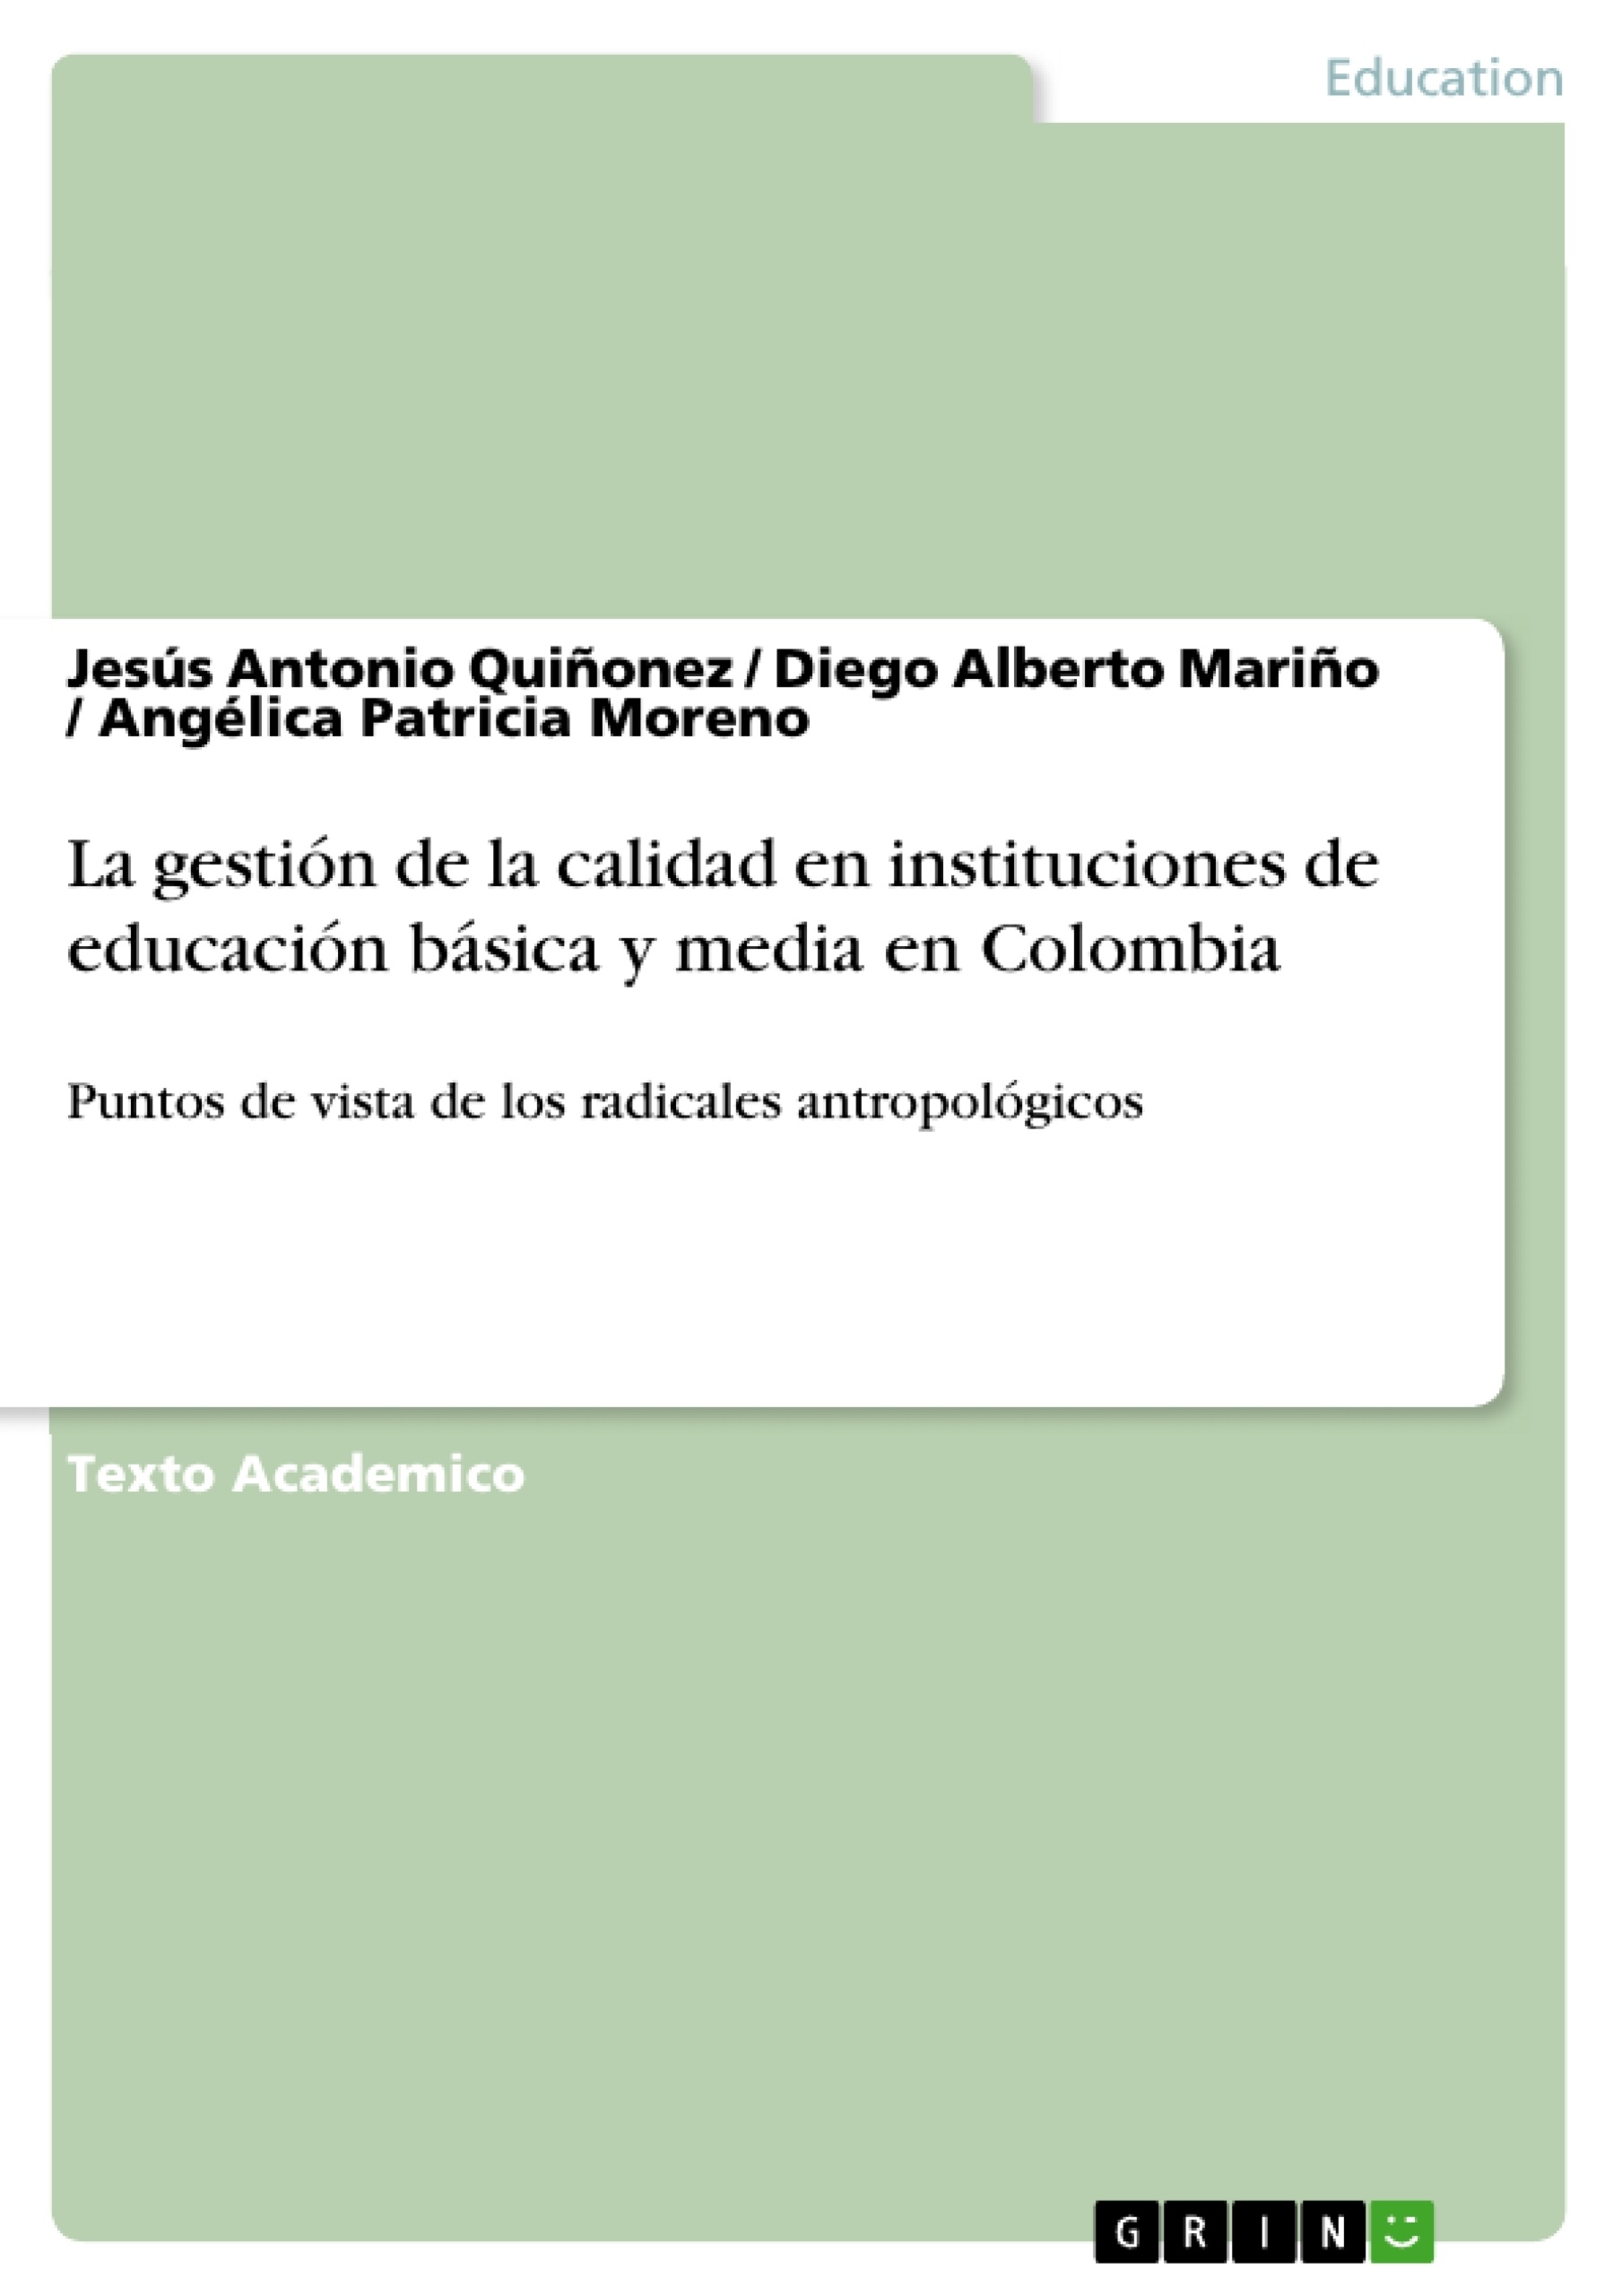 Título: La gestión de la calidad en instituciones de educación básica y media en Colombia